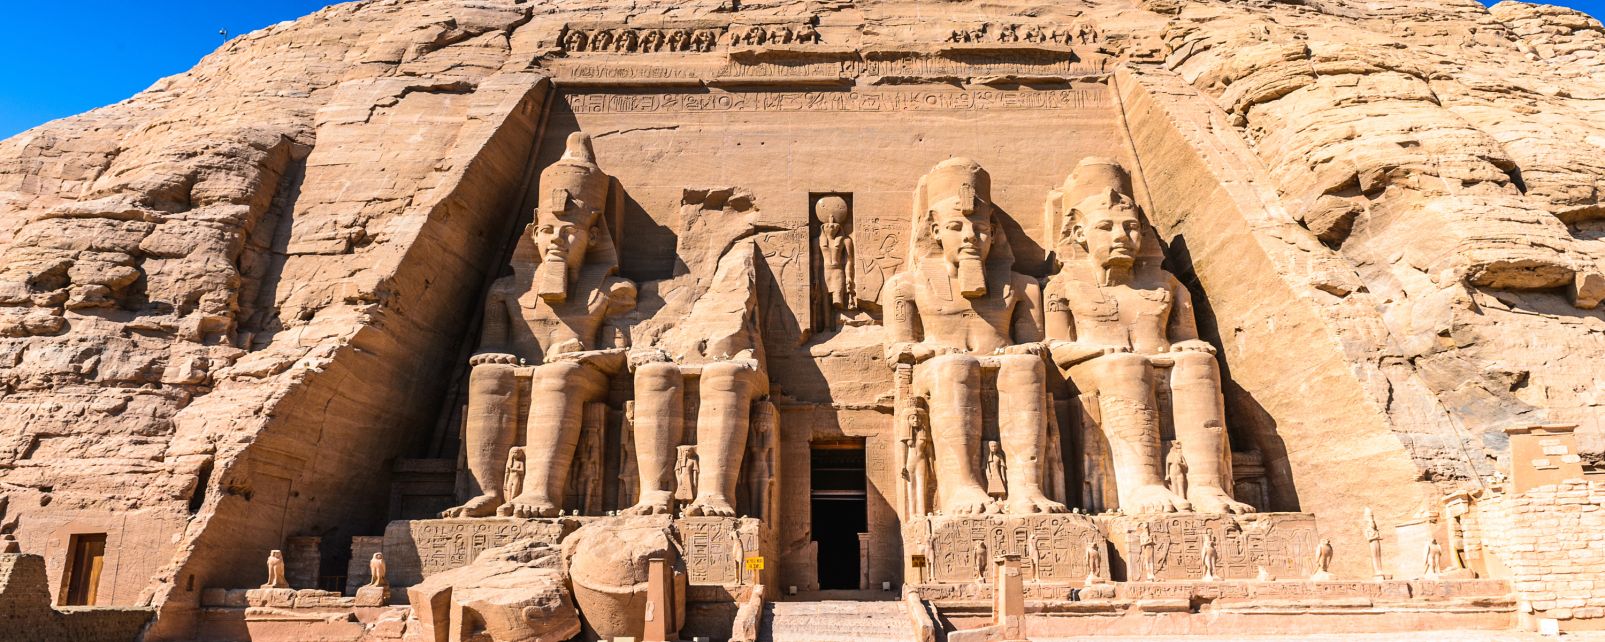 6. Ejipto-Templo de Abu simbel